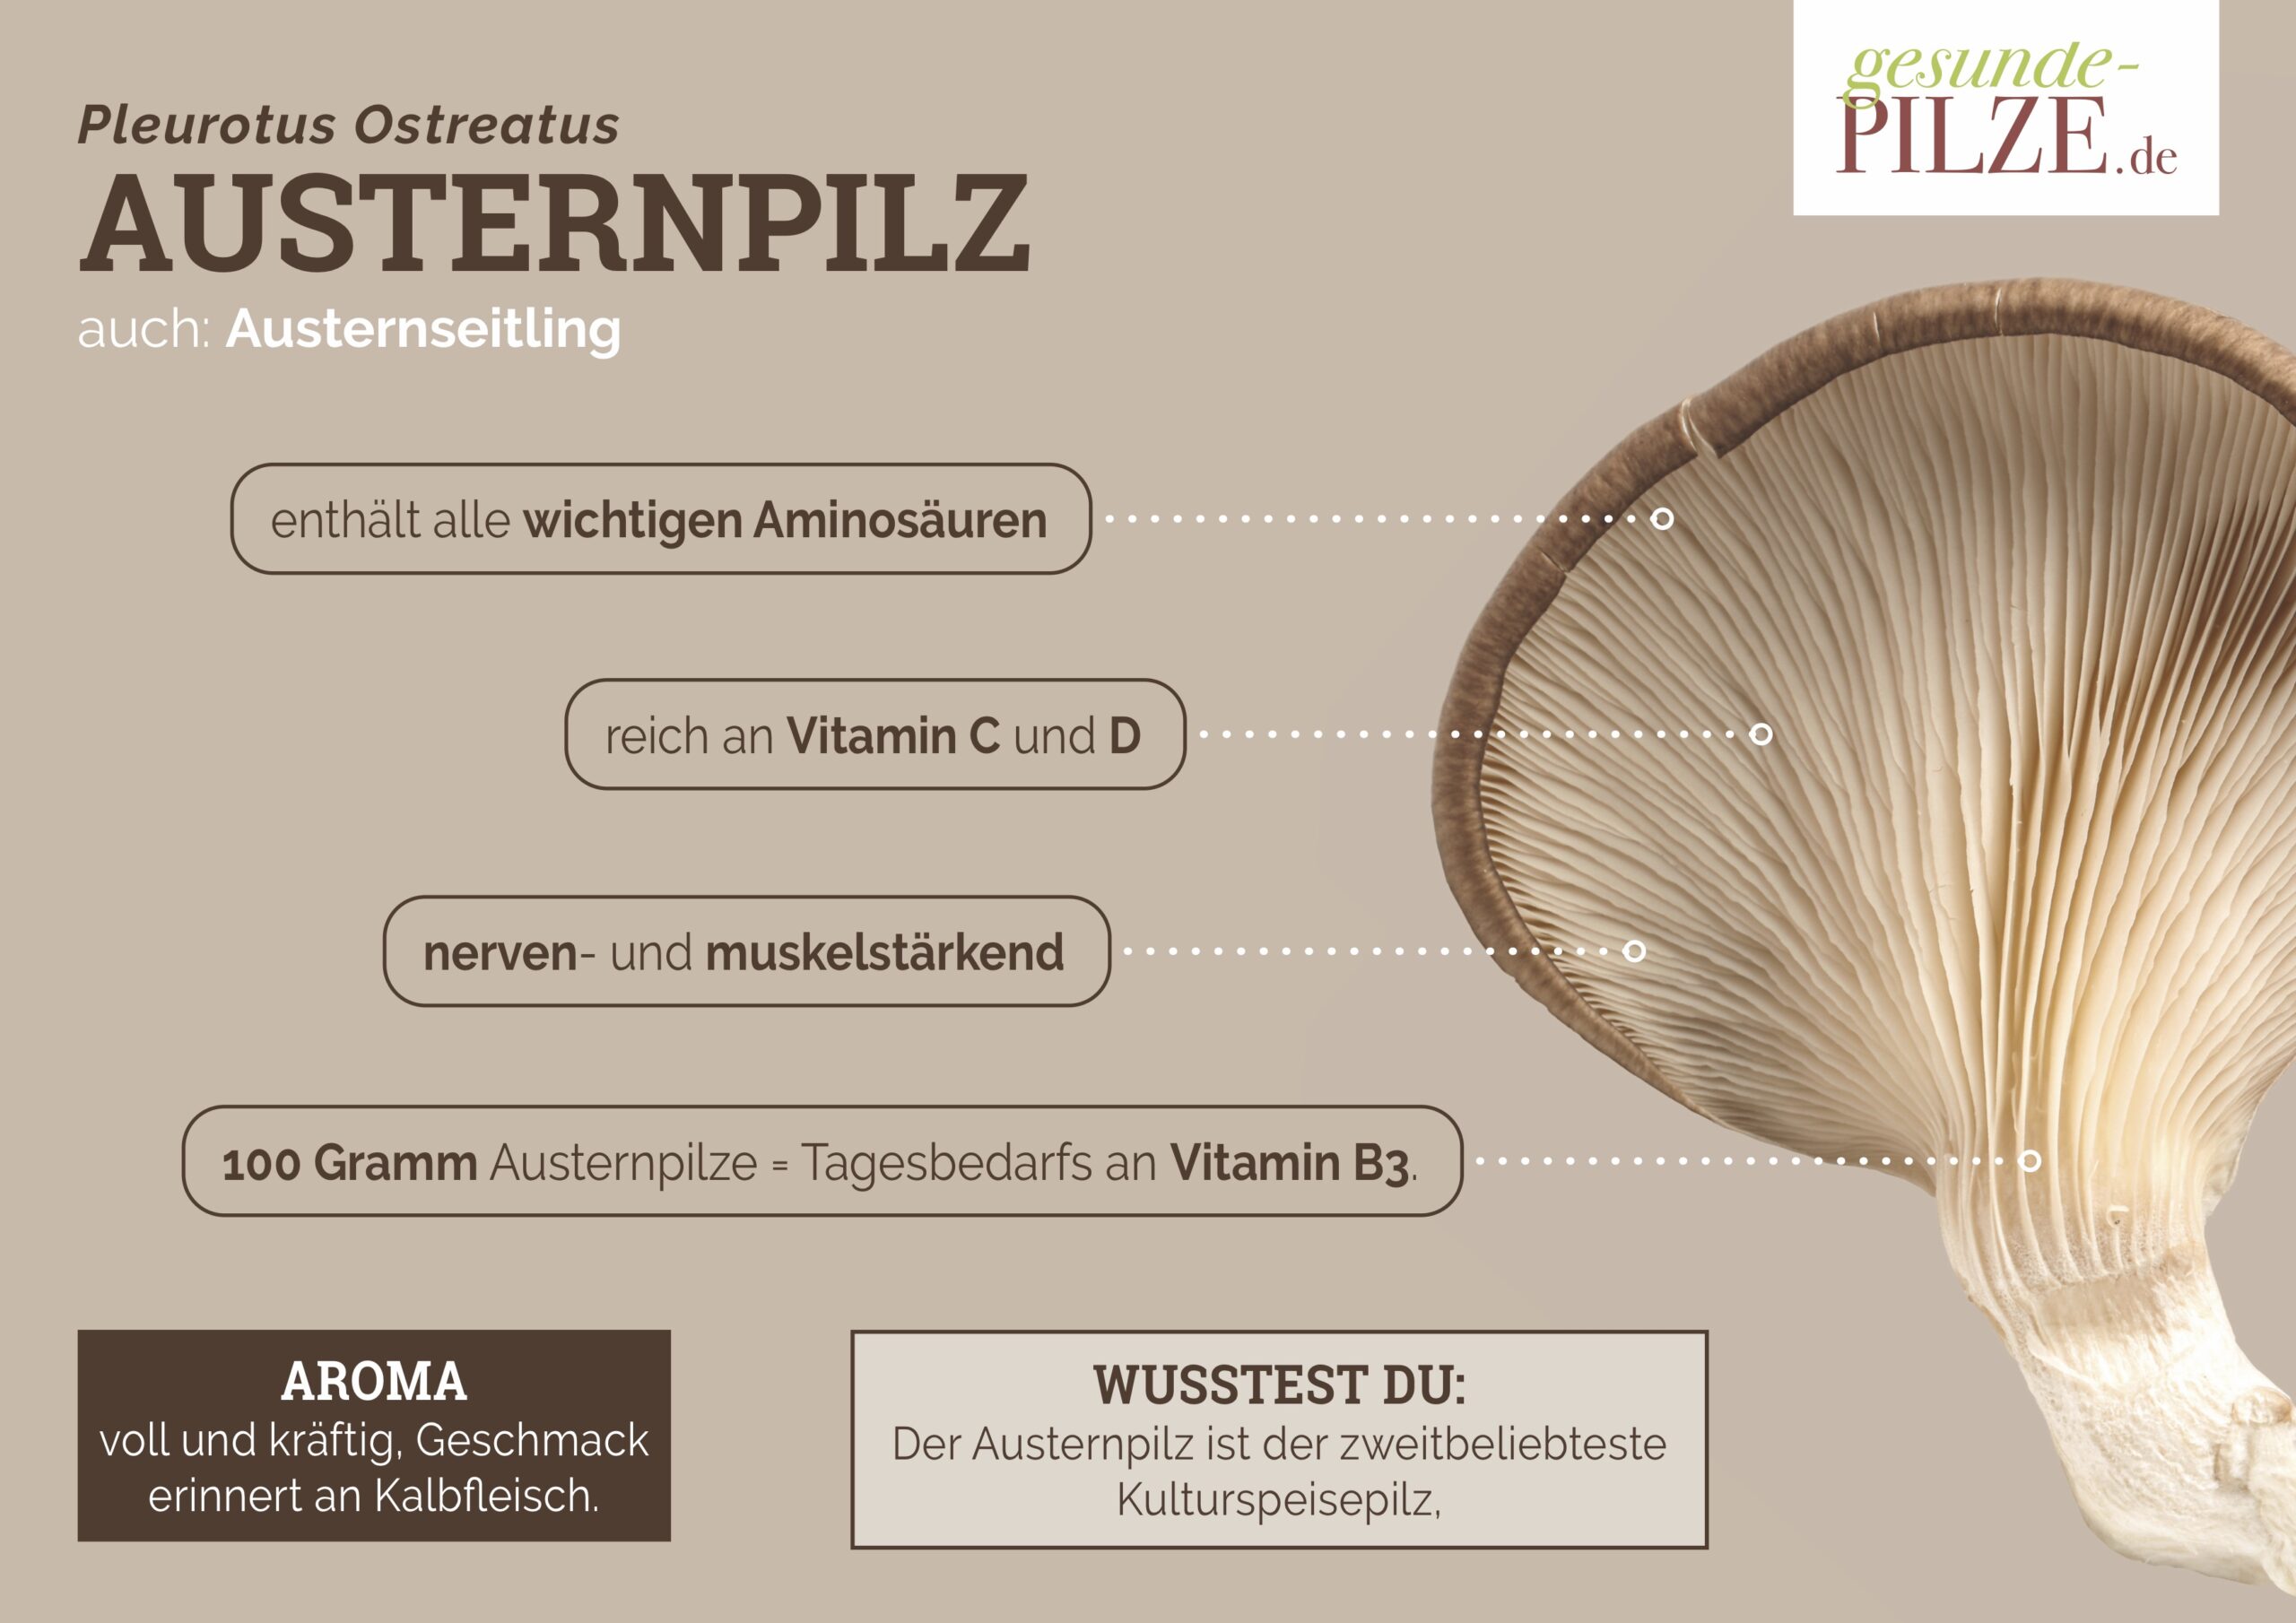 //www.gesunde-pilze.de/wp-content/uploads/2020/10/Poster_Austernpilz_quer-scaled.jpg